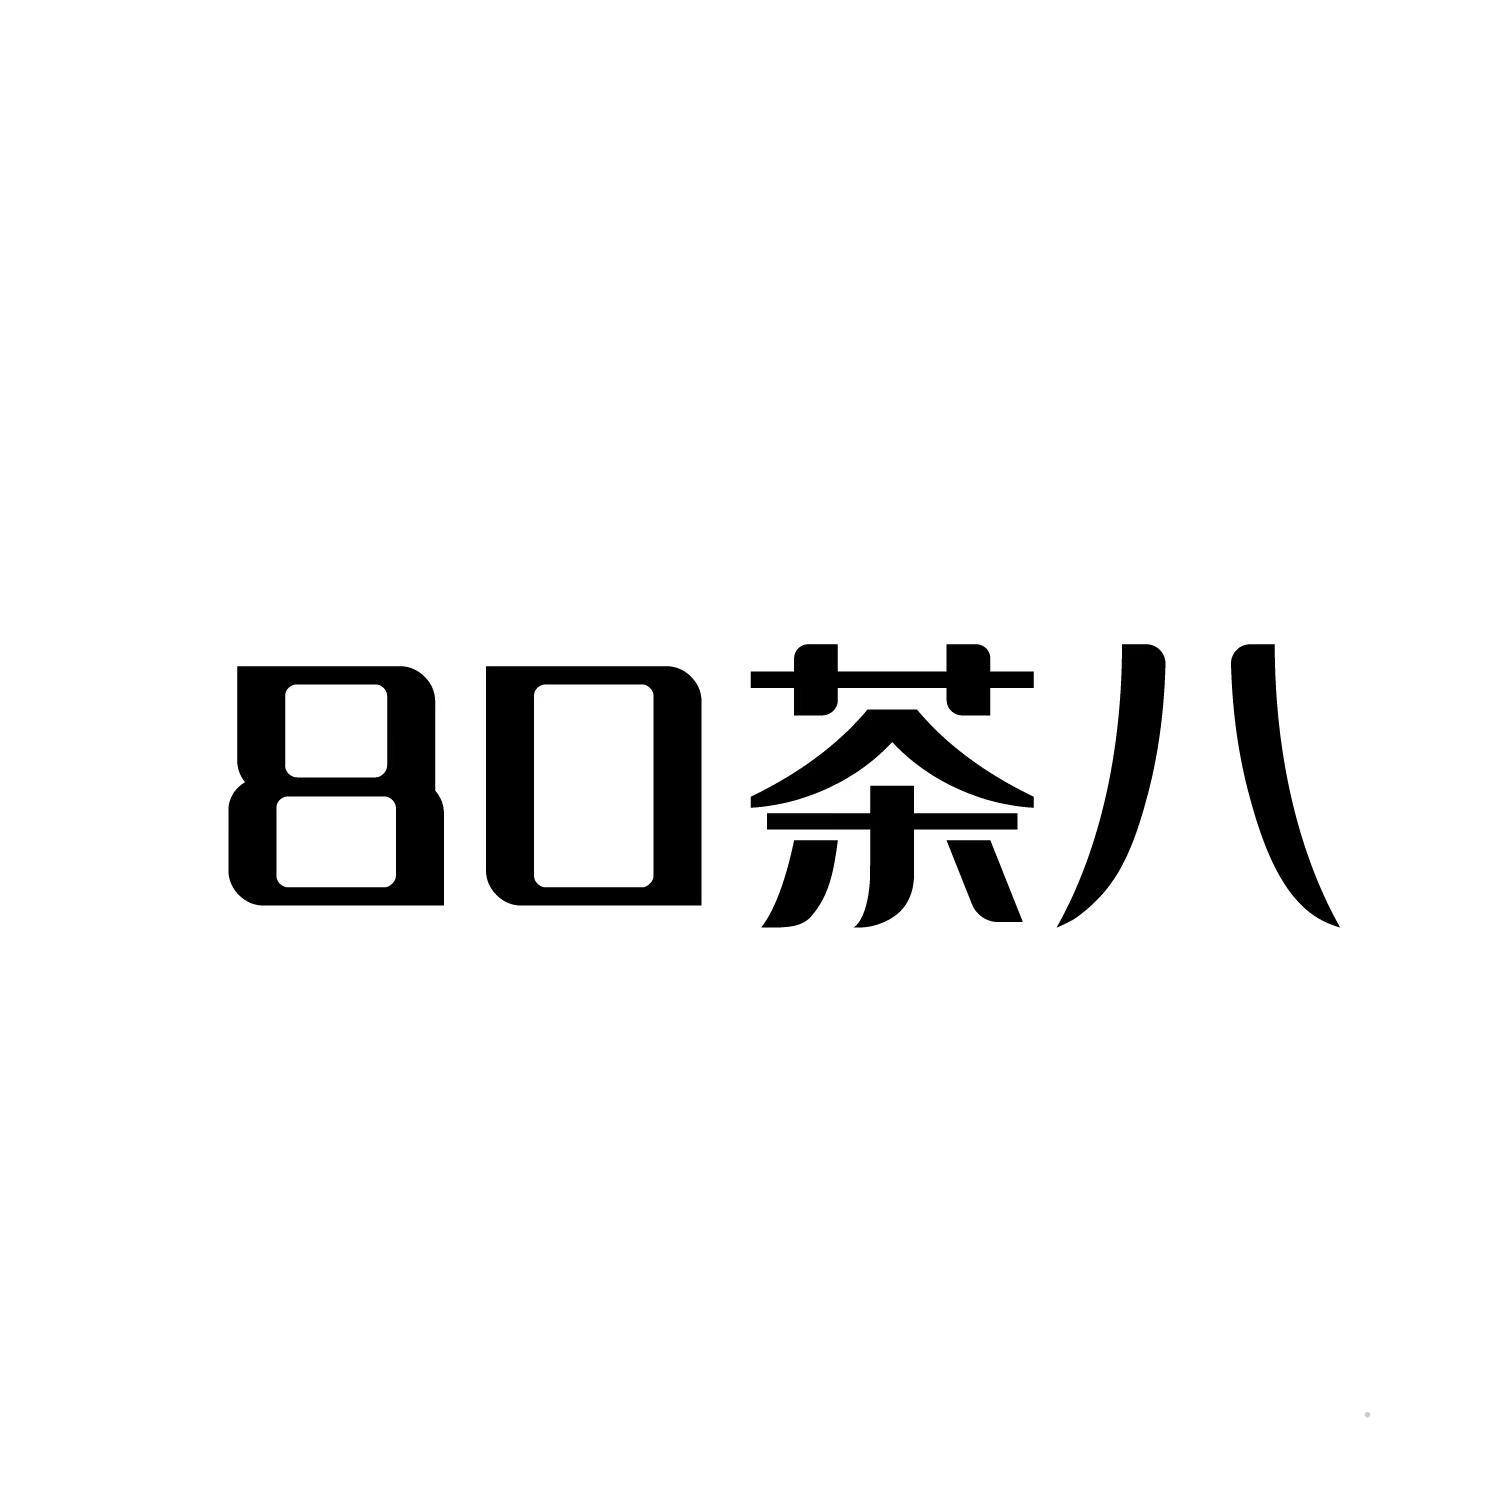 80 茶八logo